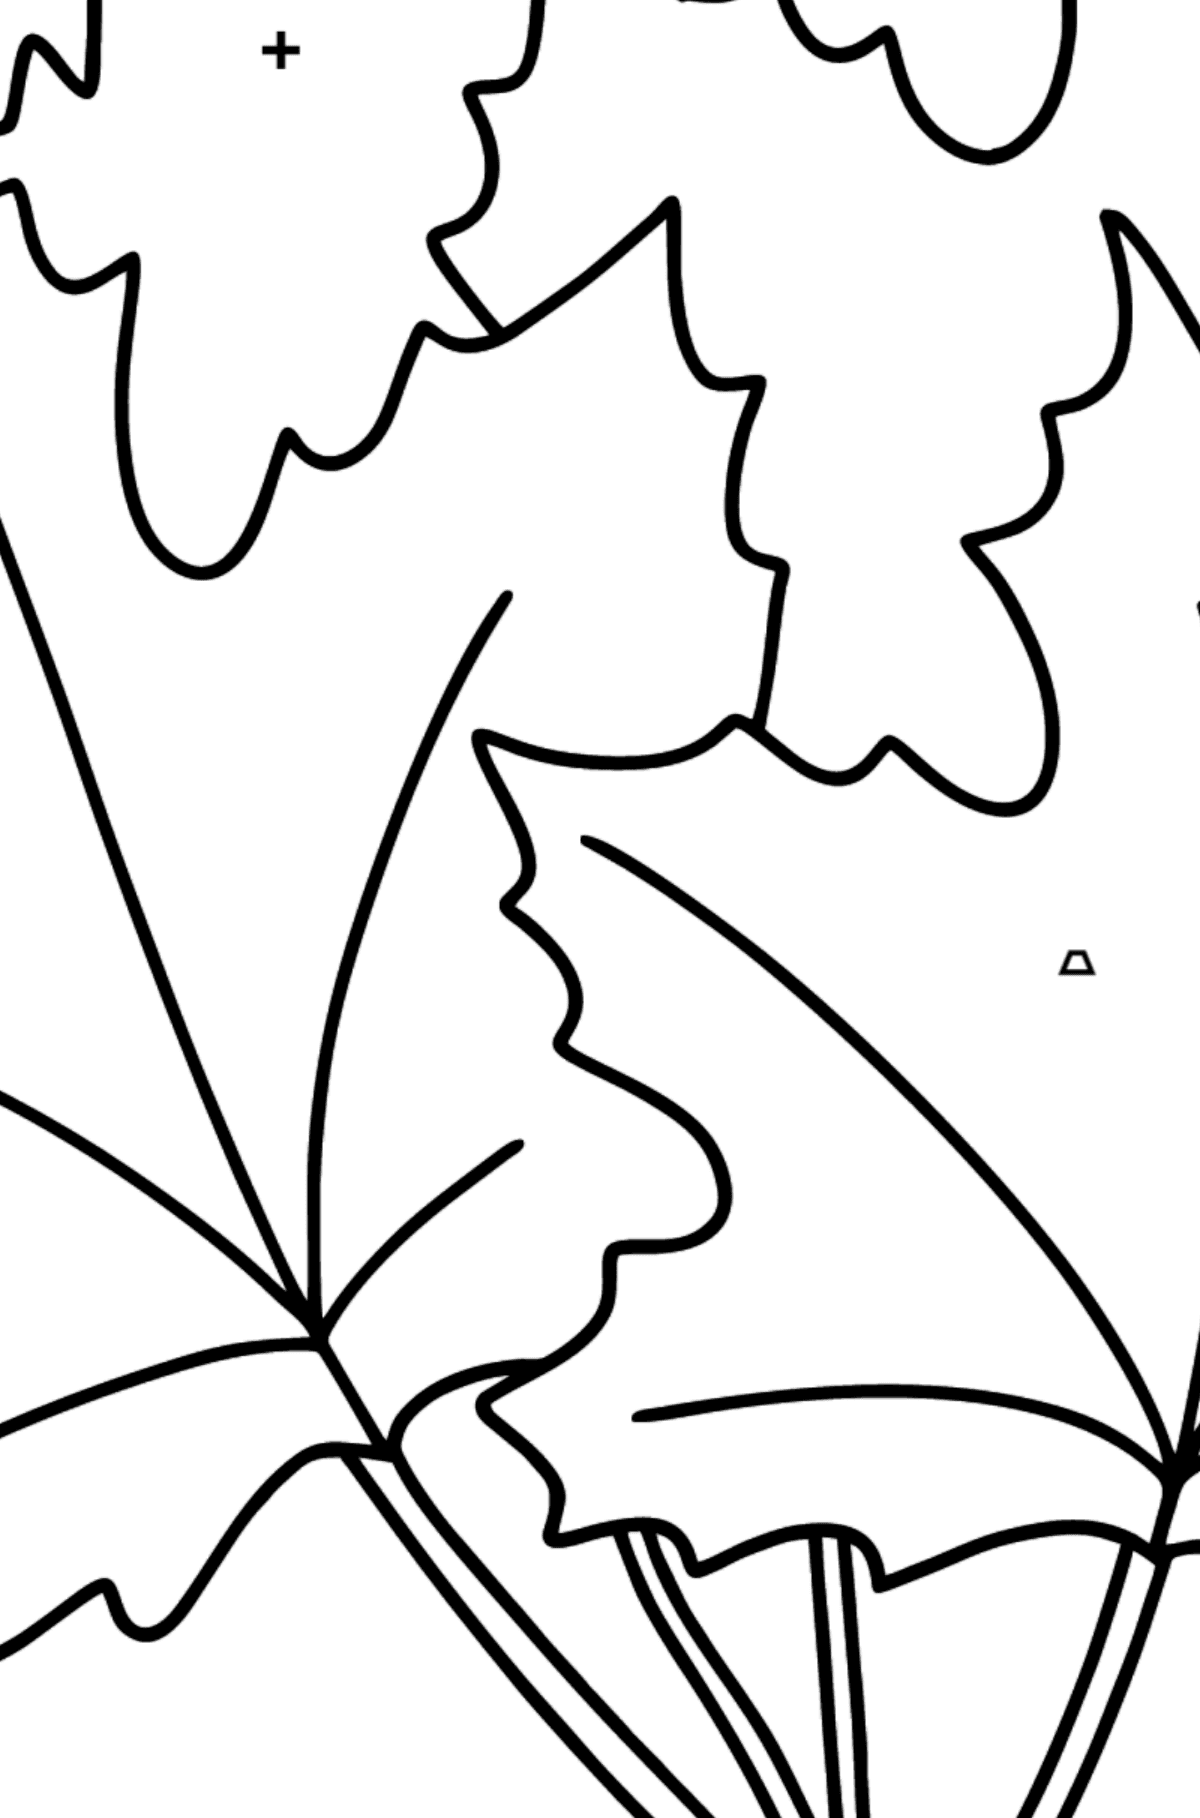 Dibujo de Ramo de Arce para colorear - Colorear por Símbolos para Niños